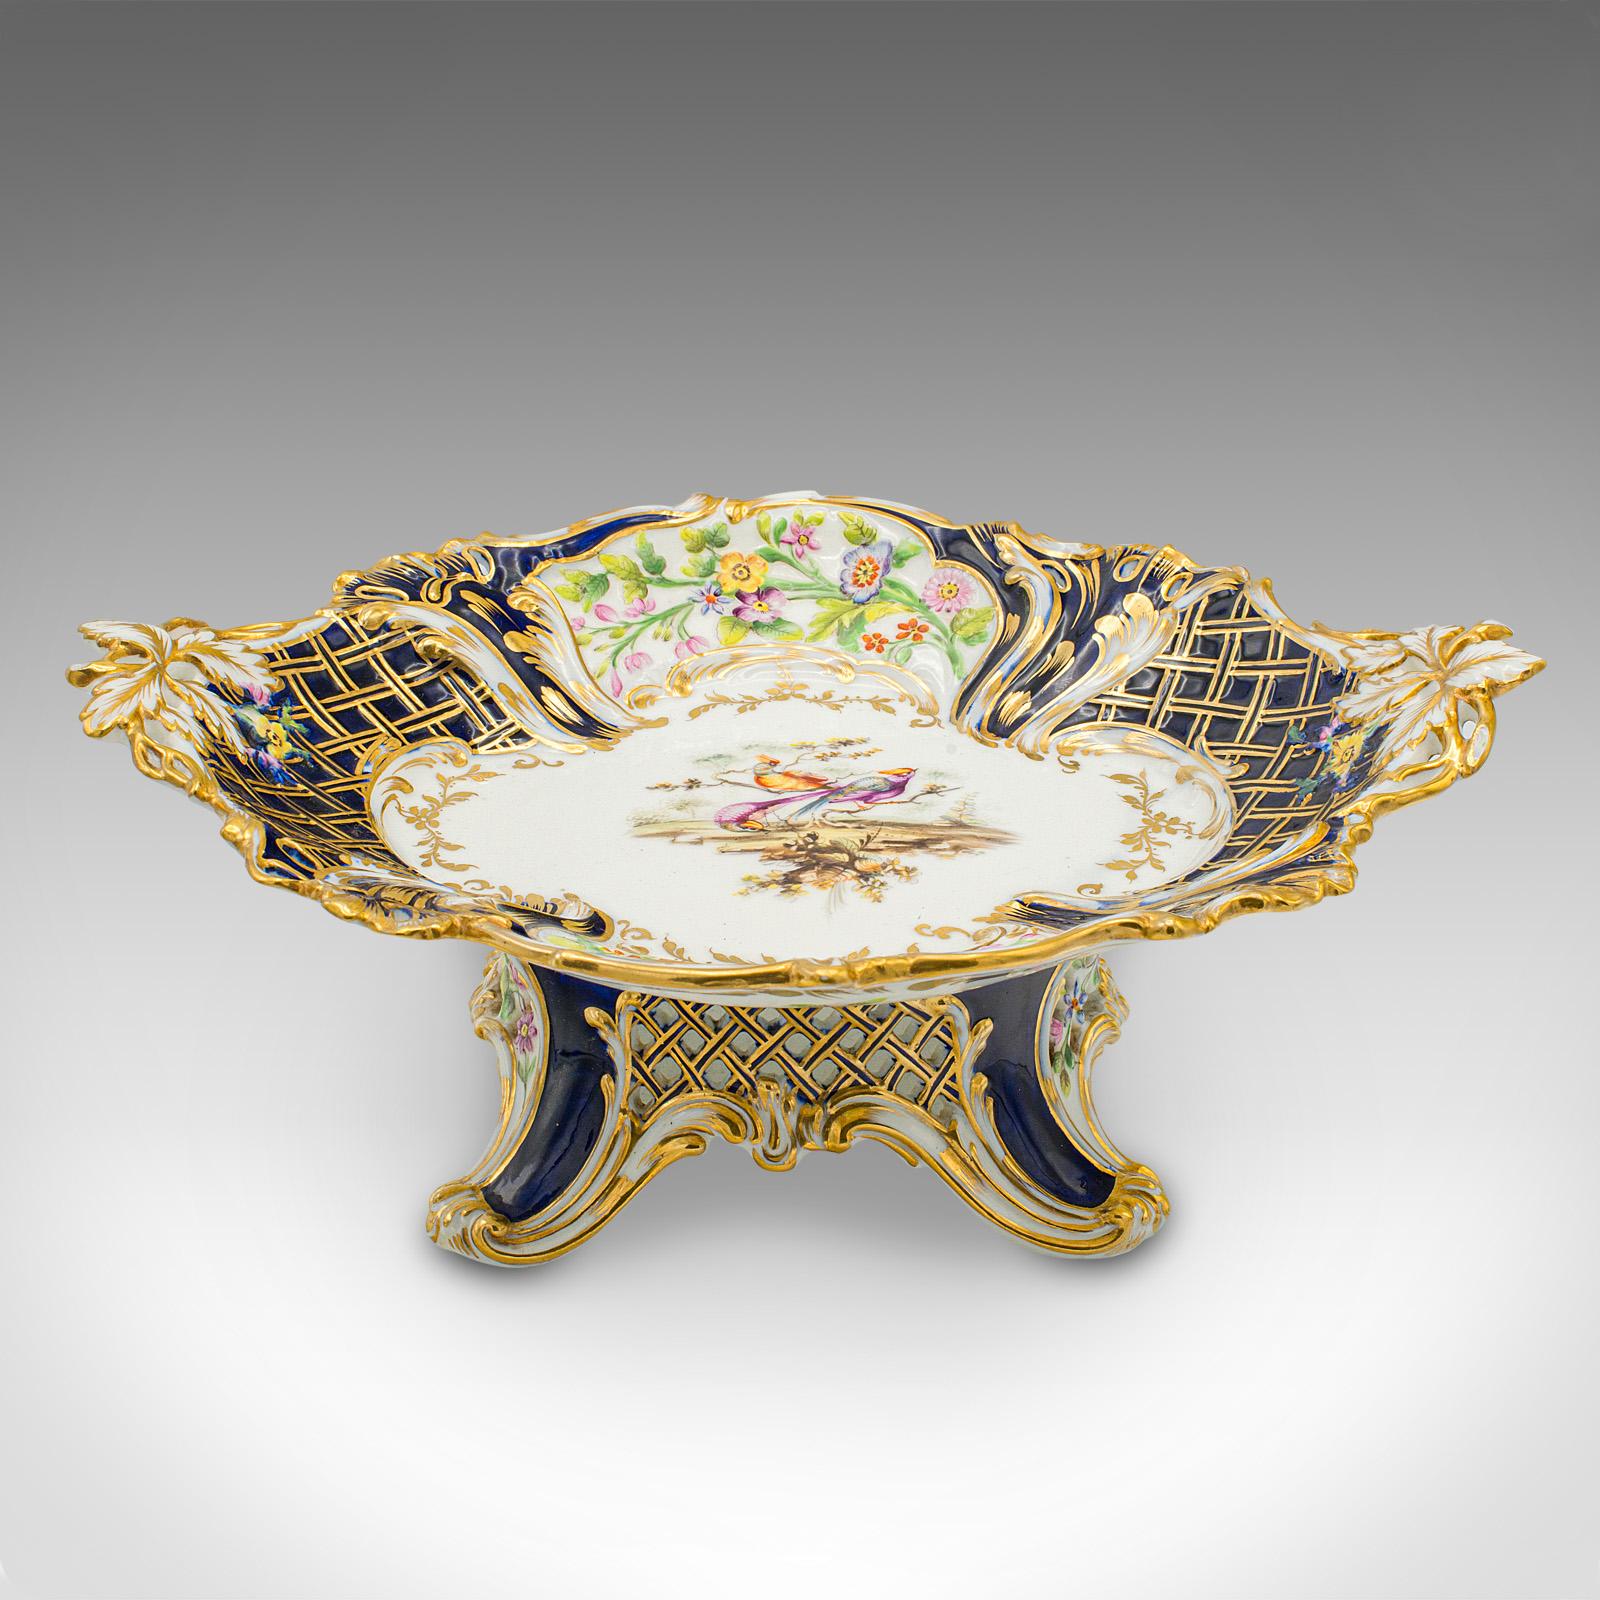 Dies ist eine antike dekorative Komporte. Eine englische, vergoldete Keramik-Servierplatte aus der Edwardianischen Zeit, um 1910.

Attraktives Beispiel für Serviergeschirr, mit kunstvollen Details und schöner Farbe
Zeigt eine wünschenswerte